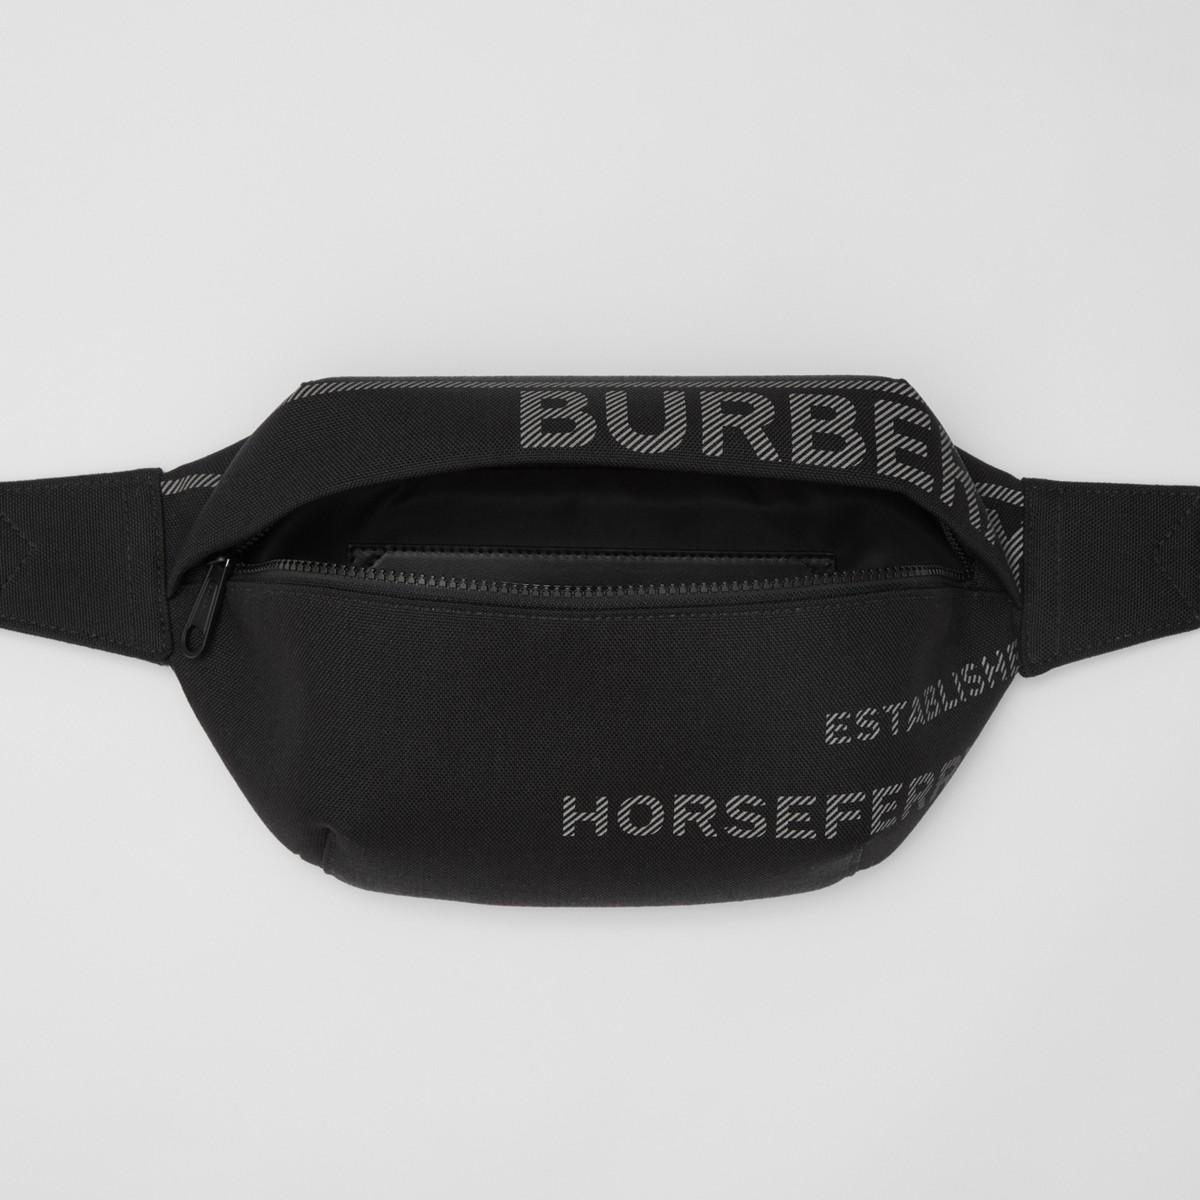 Belt bags Burberry - Sonny nylon bum bag - 8010144